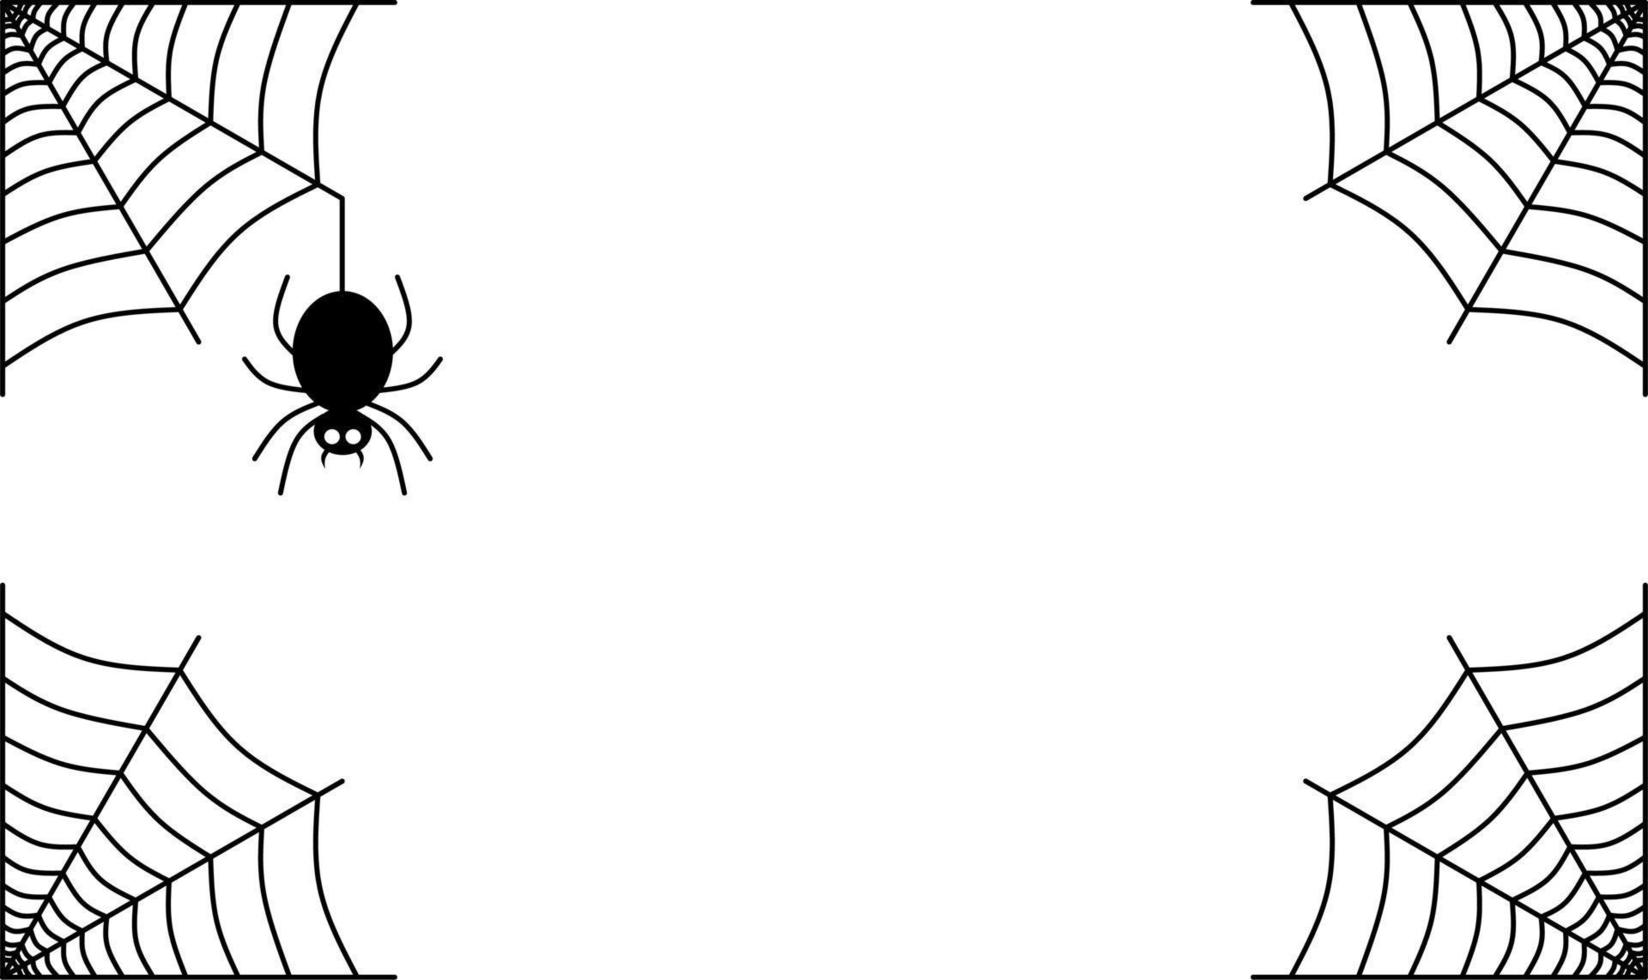 skizzieren Sie den Halloween-Hintergrund mit Spinnennetz und Spinne vektor